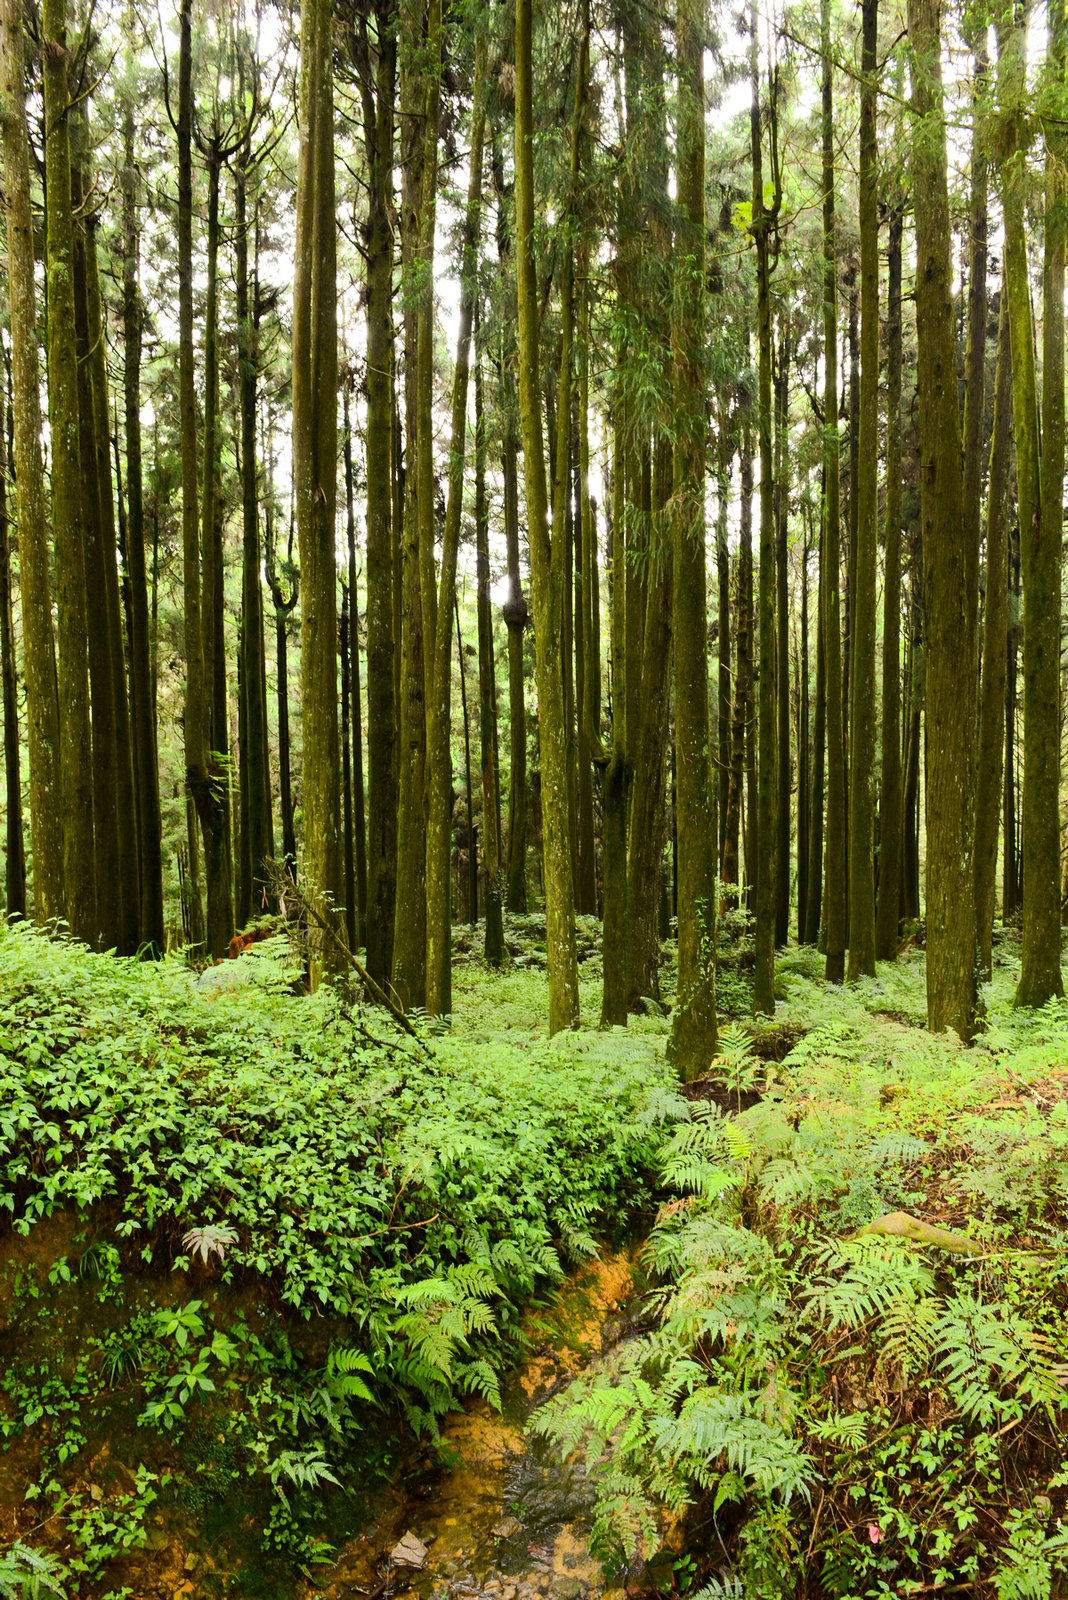 森林阶梯小道绿色养眼高清手机壁纸